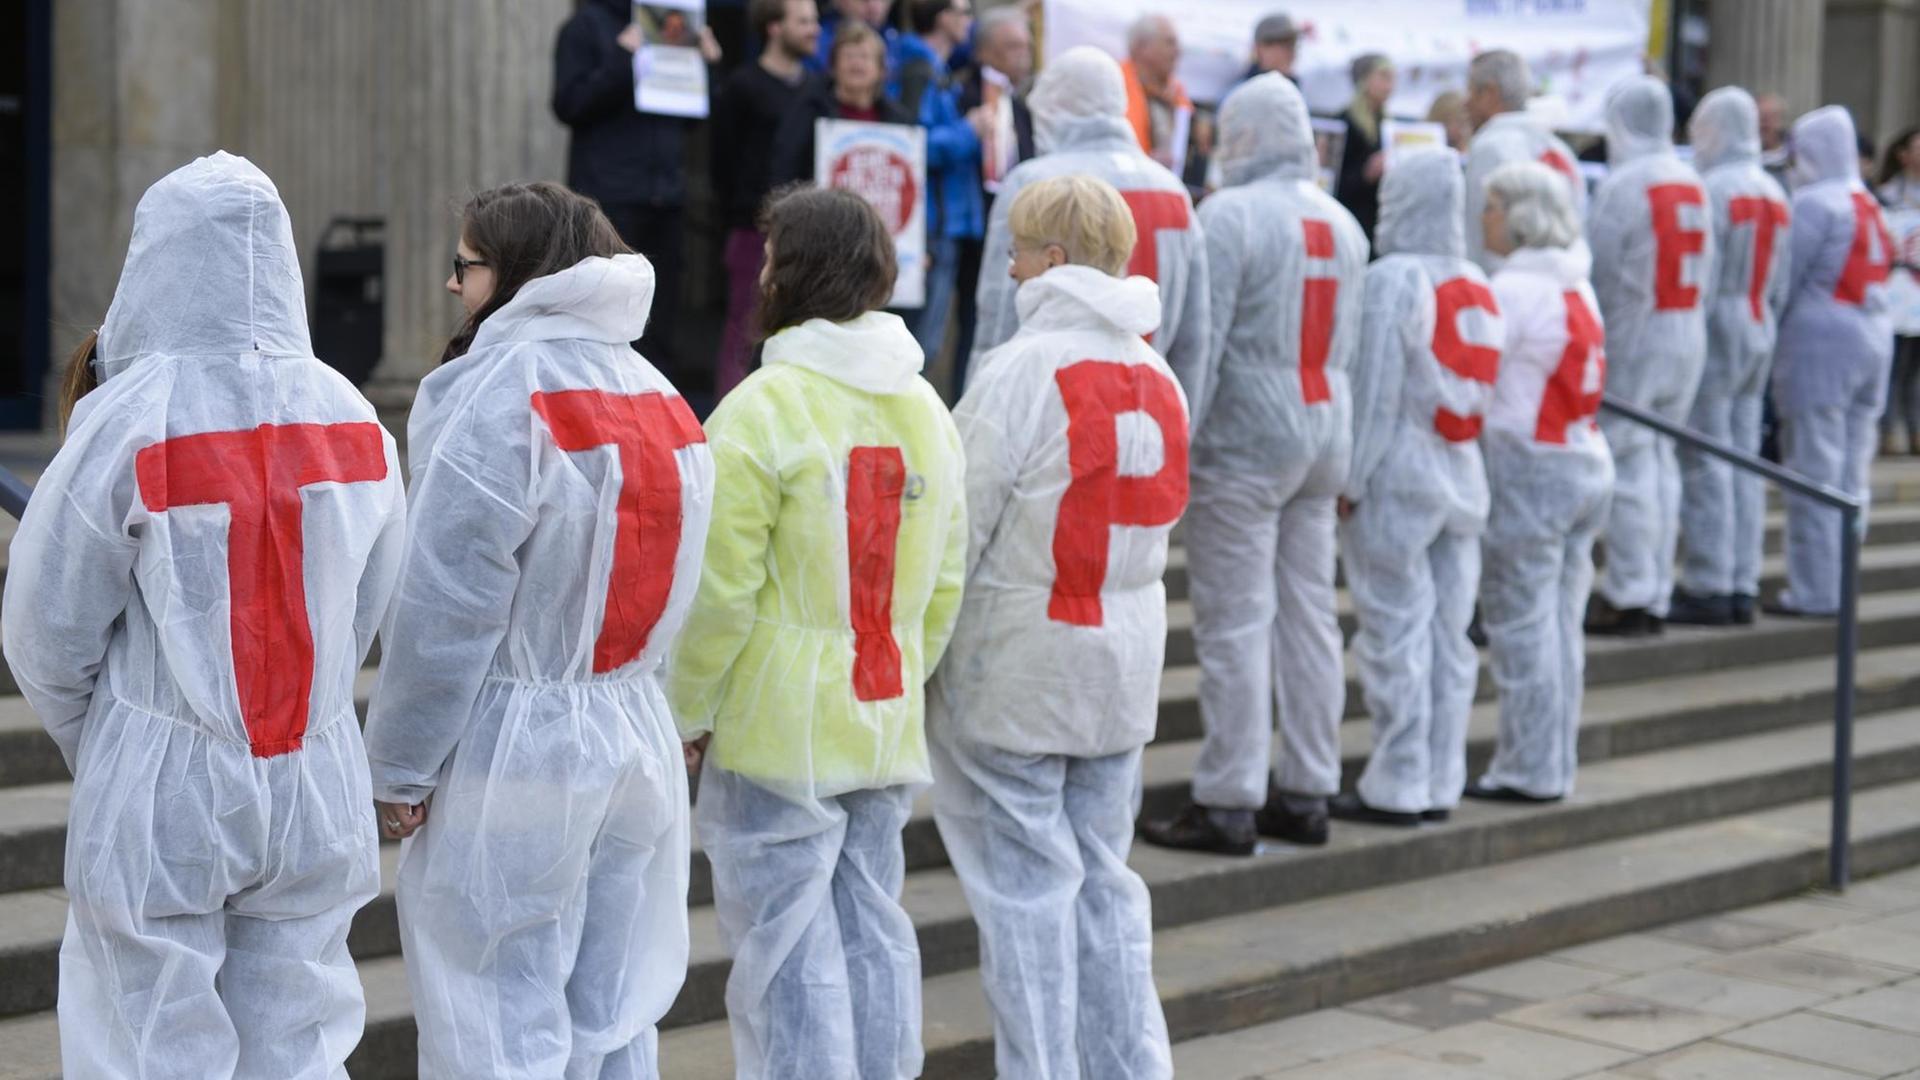 Gegner des Freihandelsabkommens TTIP demonstrieren am 16.04.2016 in Hannover (Niedersachsen) vor der Oper gegen das geplante Abkommen.